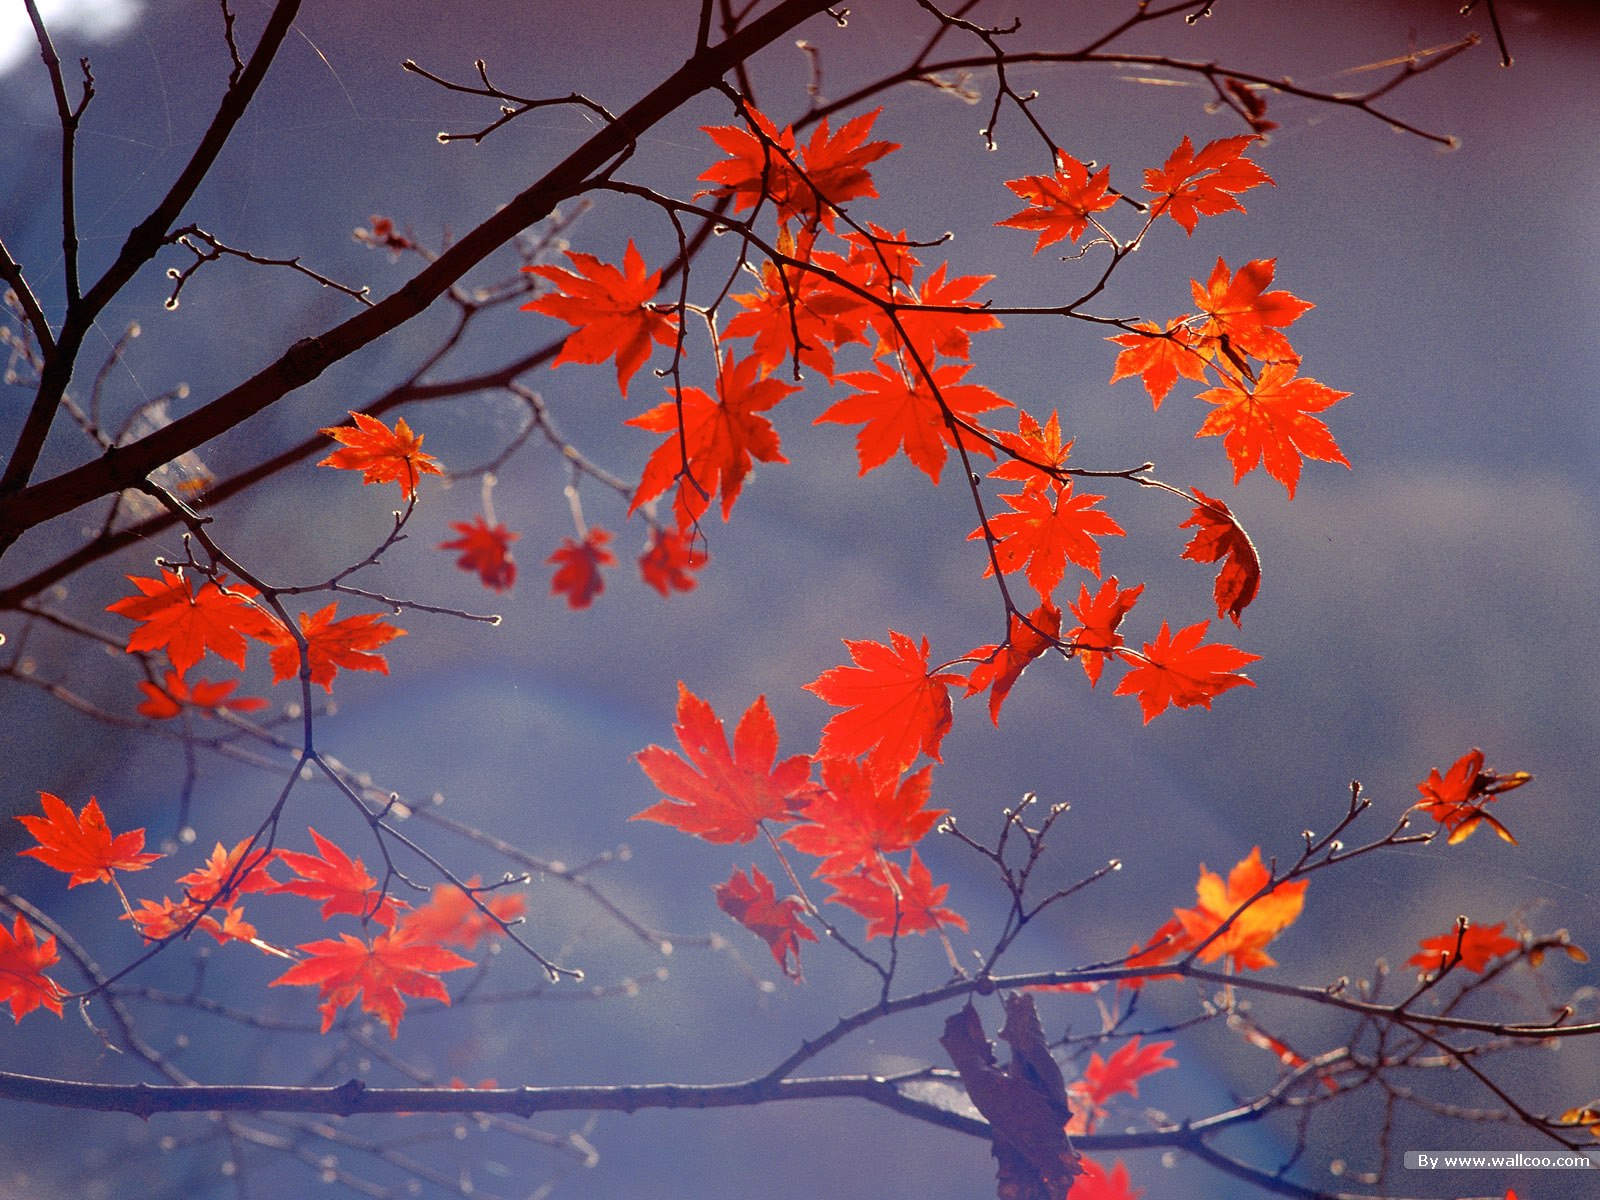 高清晰秋季红叶树林壁纸